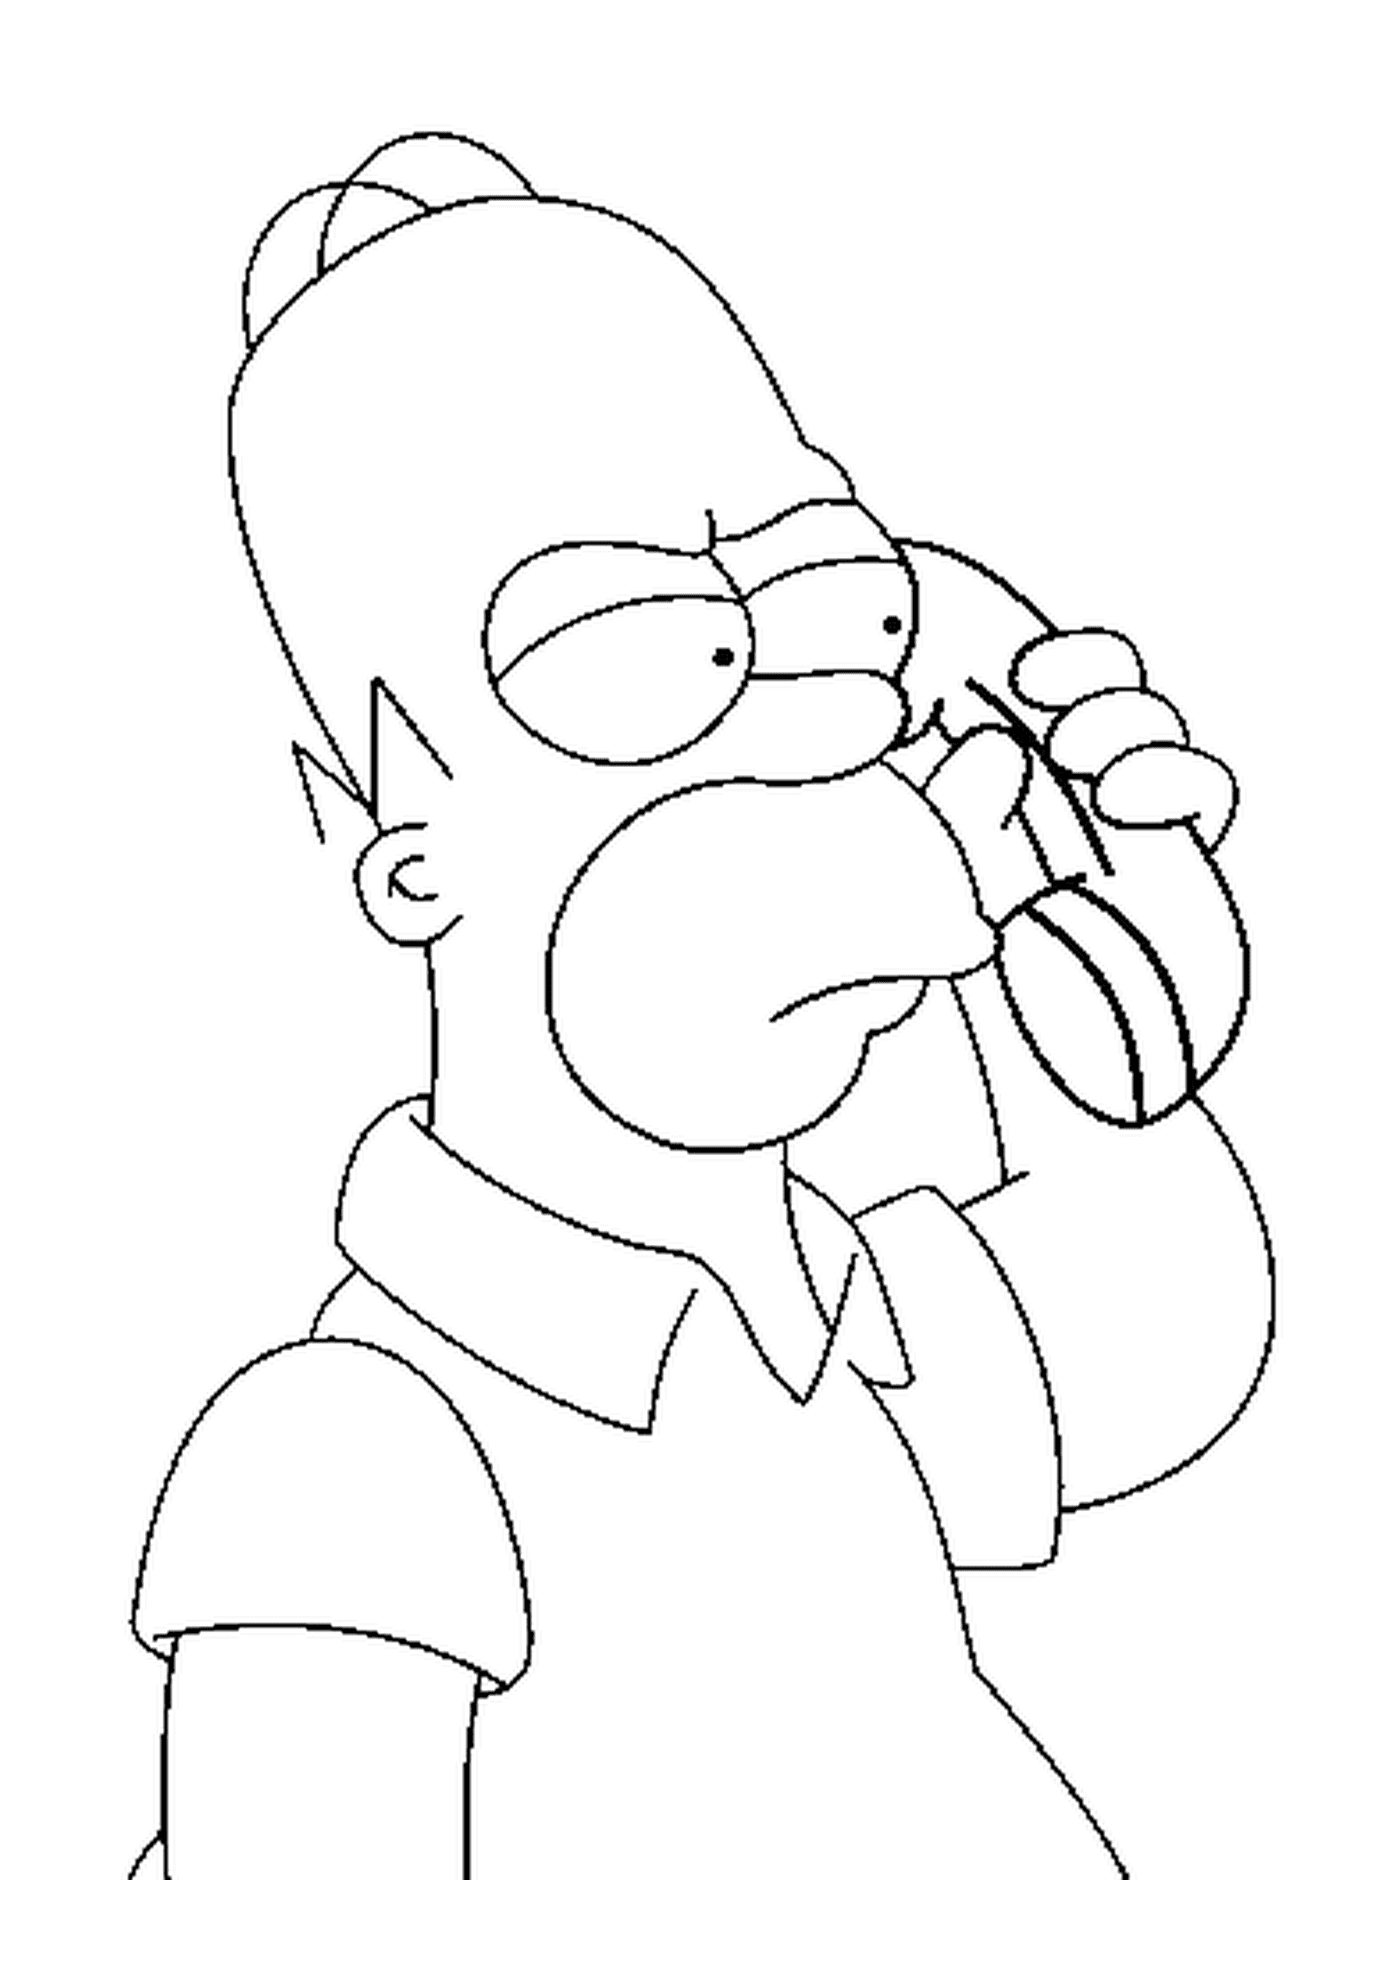  Homero está hablando por teléfono 